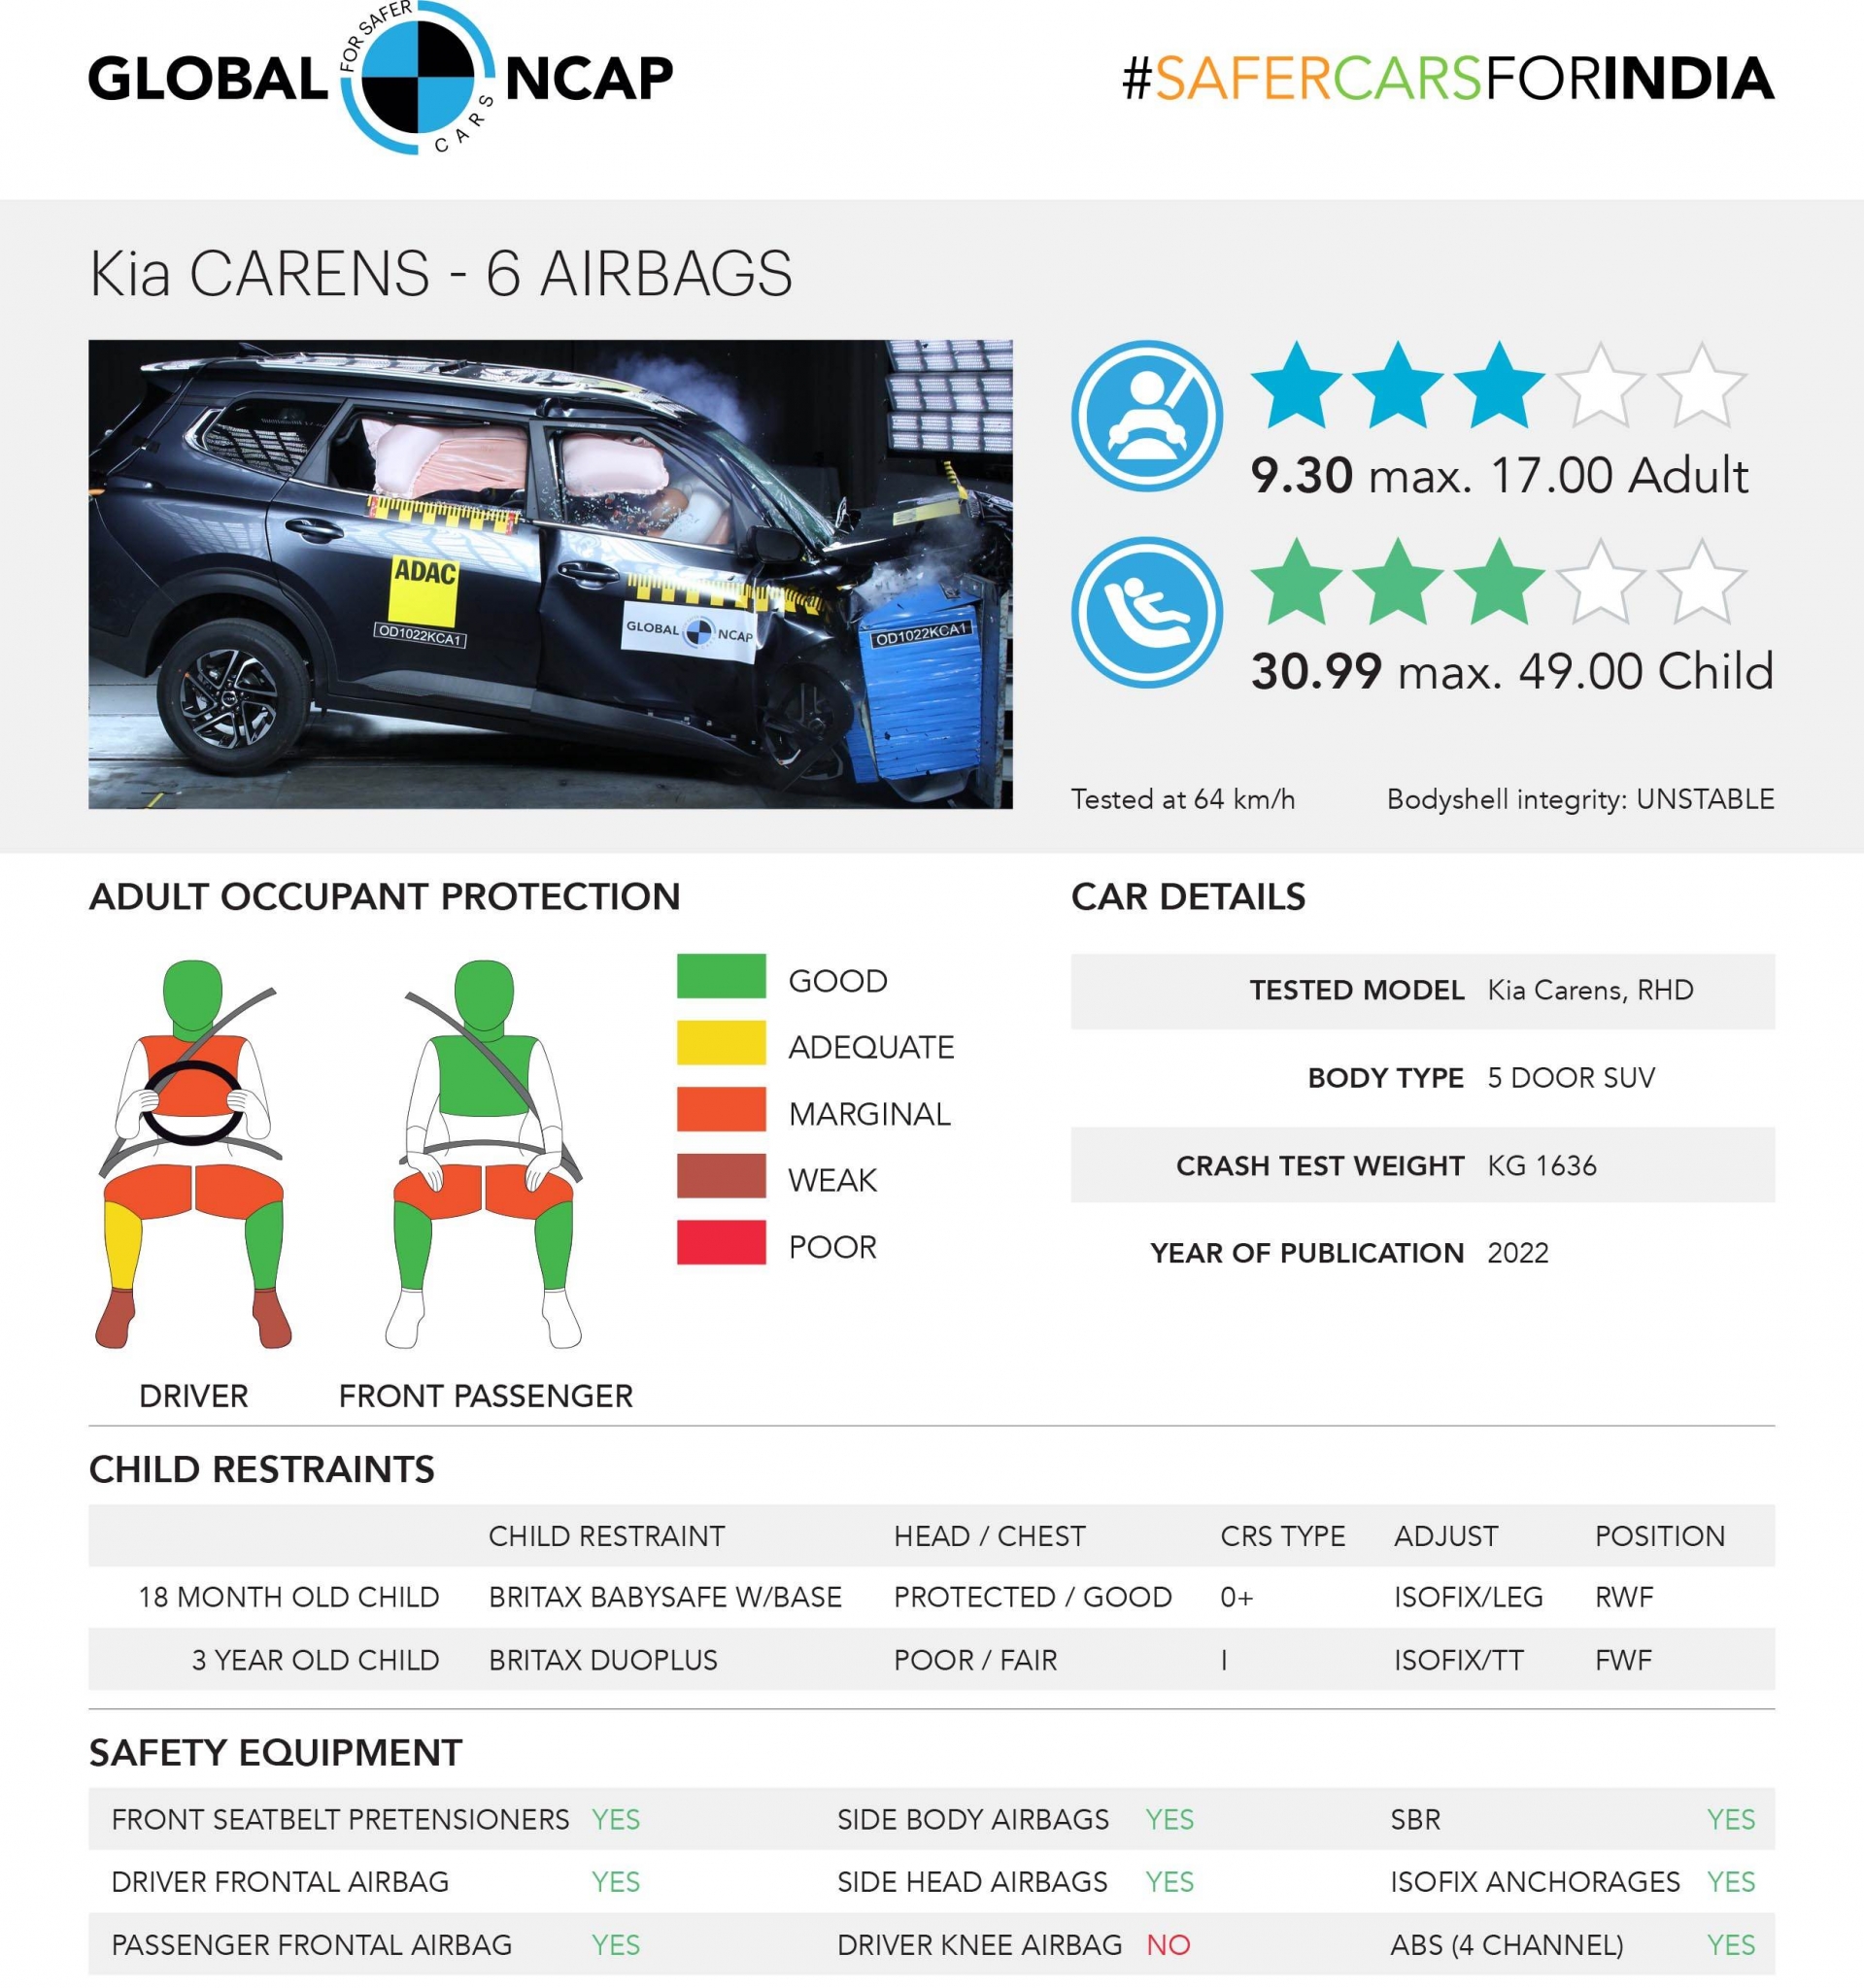 Bảng thông tin và đánh giá kết quả điểm an toàn của Kia Carens 2022 theo Global NCAP